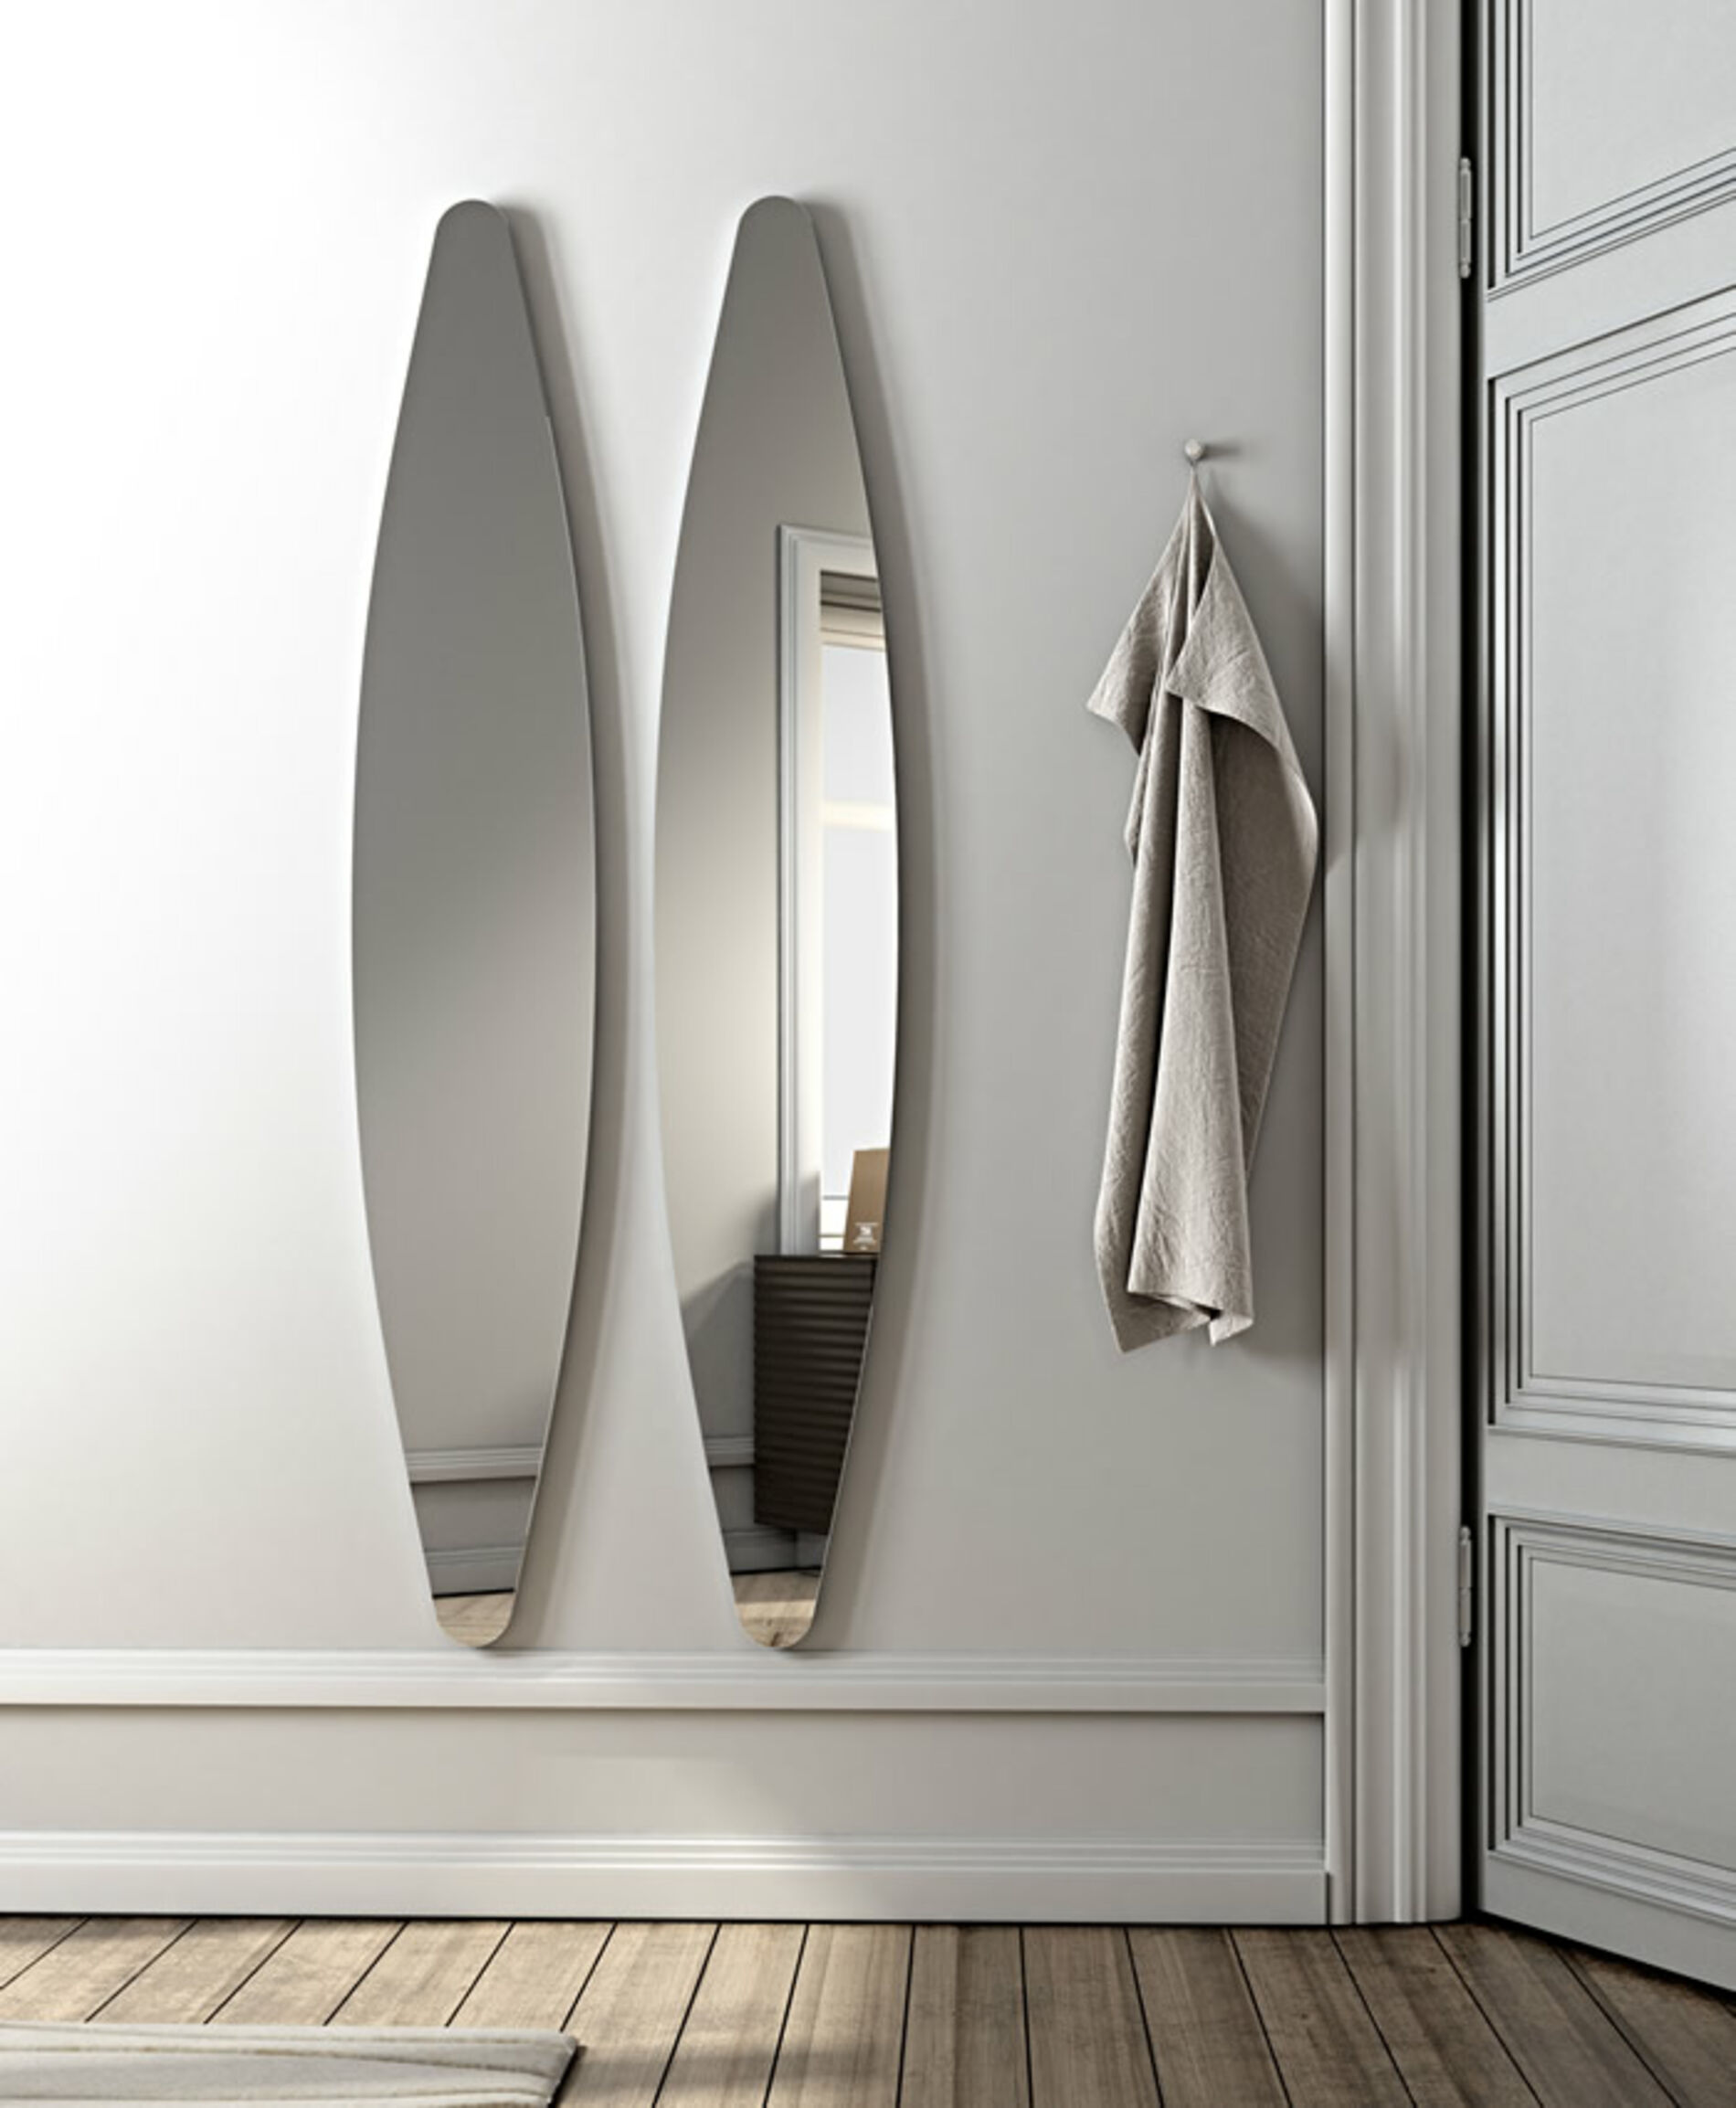 Dioscuri, specchio ovale da parete, design elegante - Riflessi